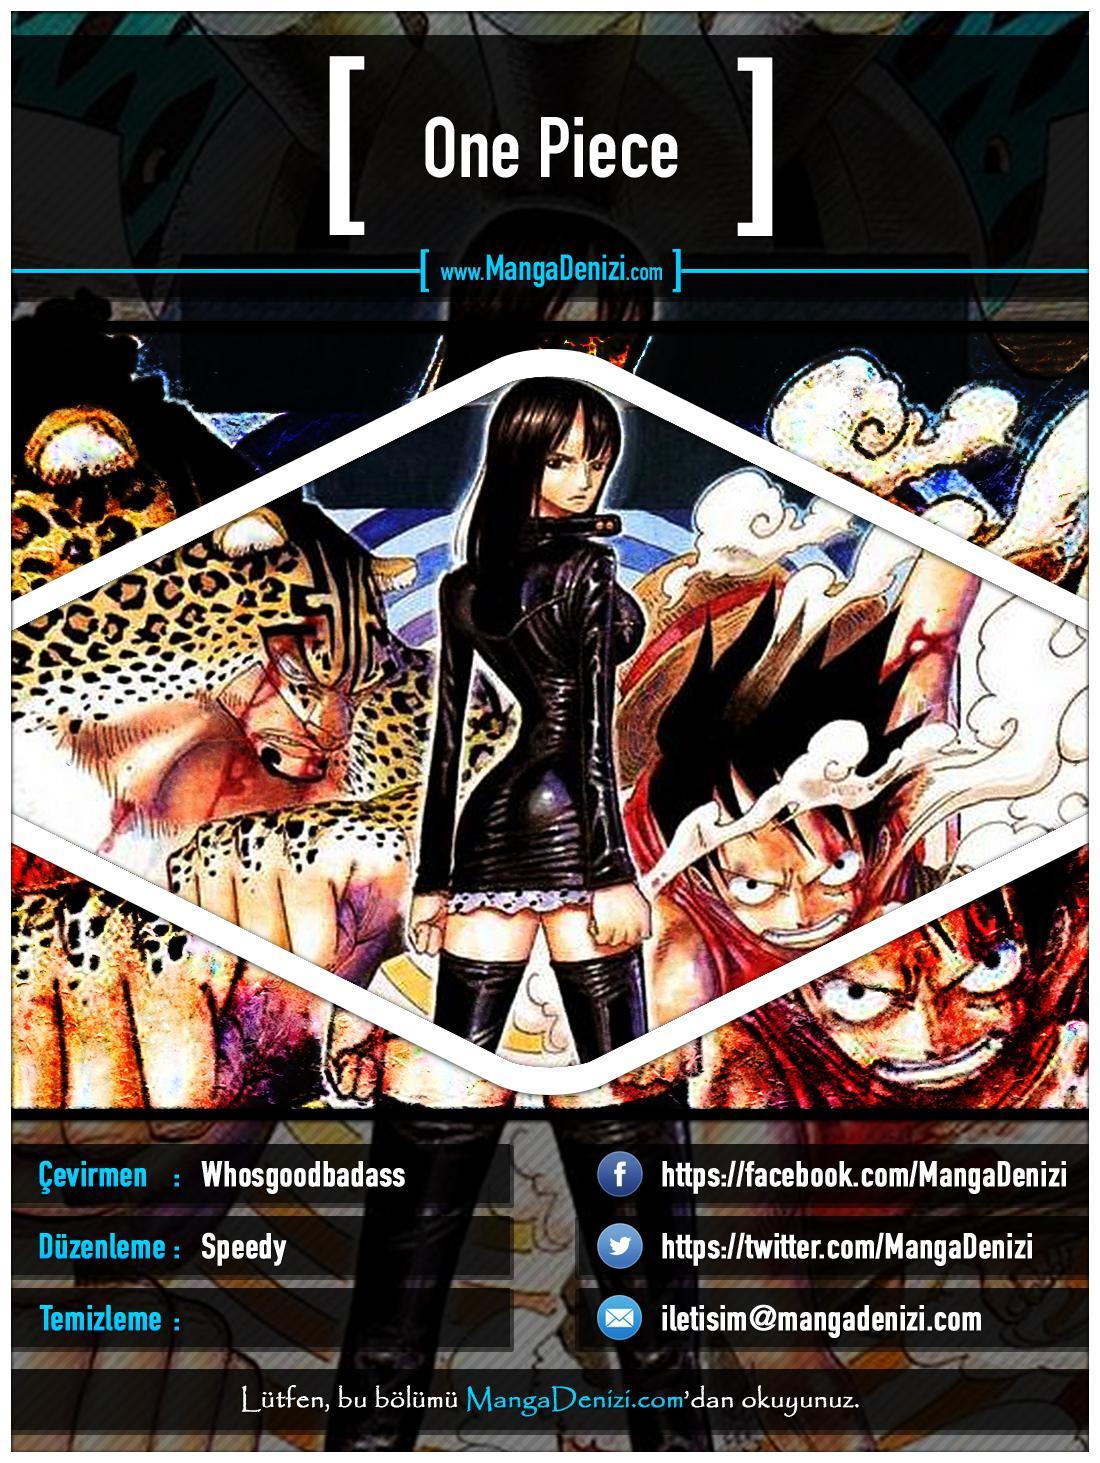 One Piece [Renkli] mangasının 0361 bölümünün 1. sayfasını okuyorsunuz.